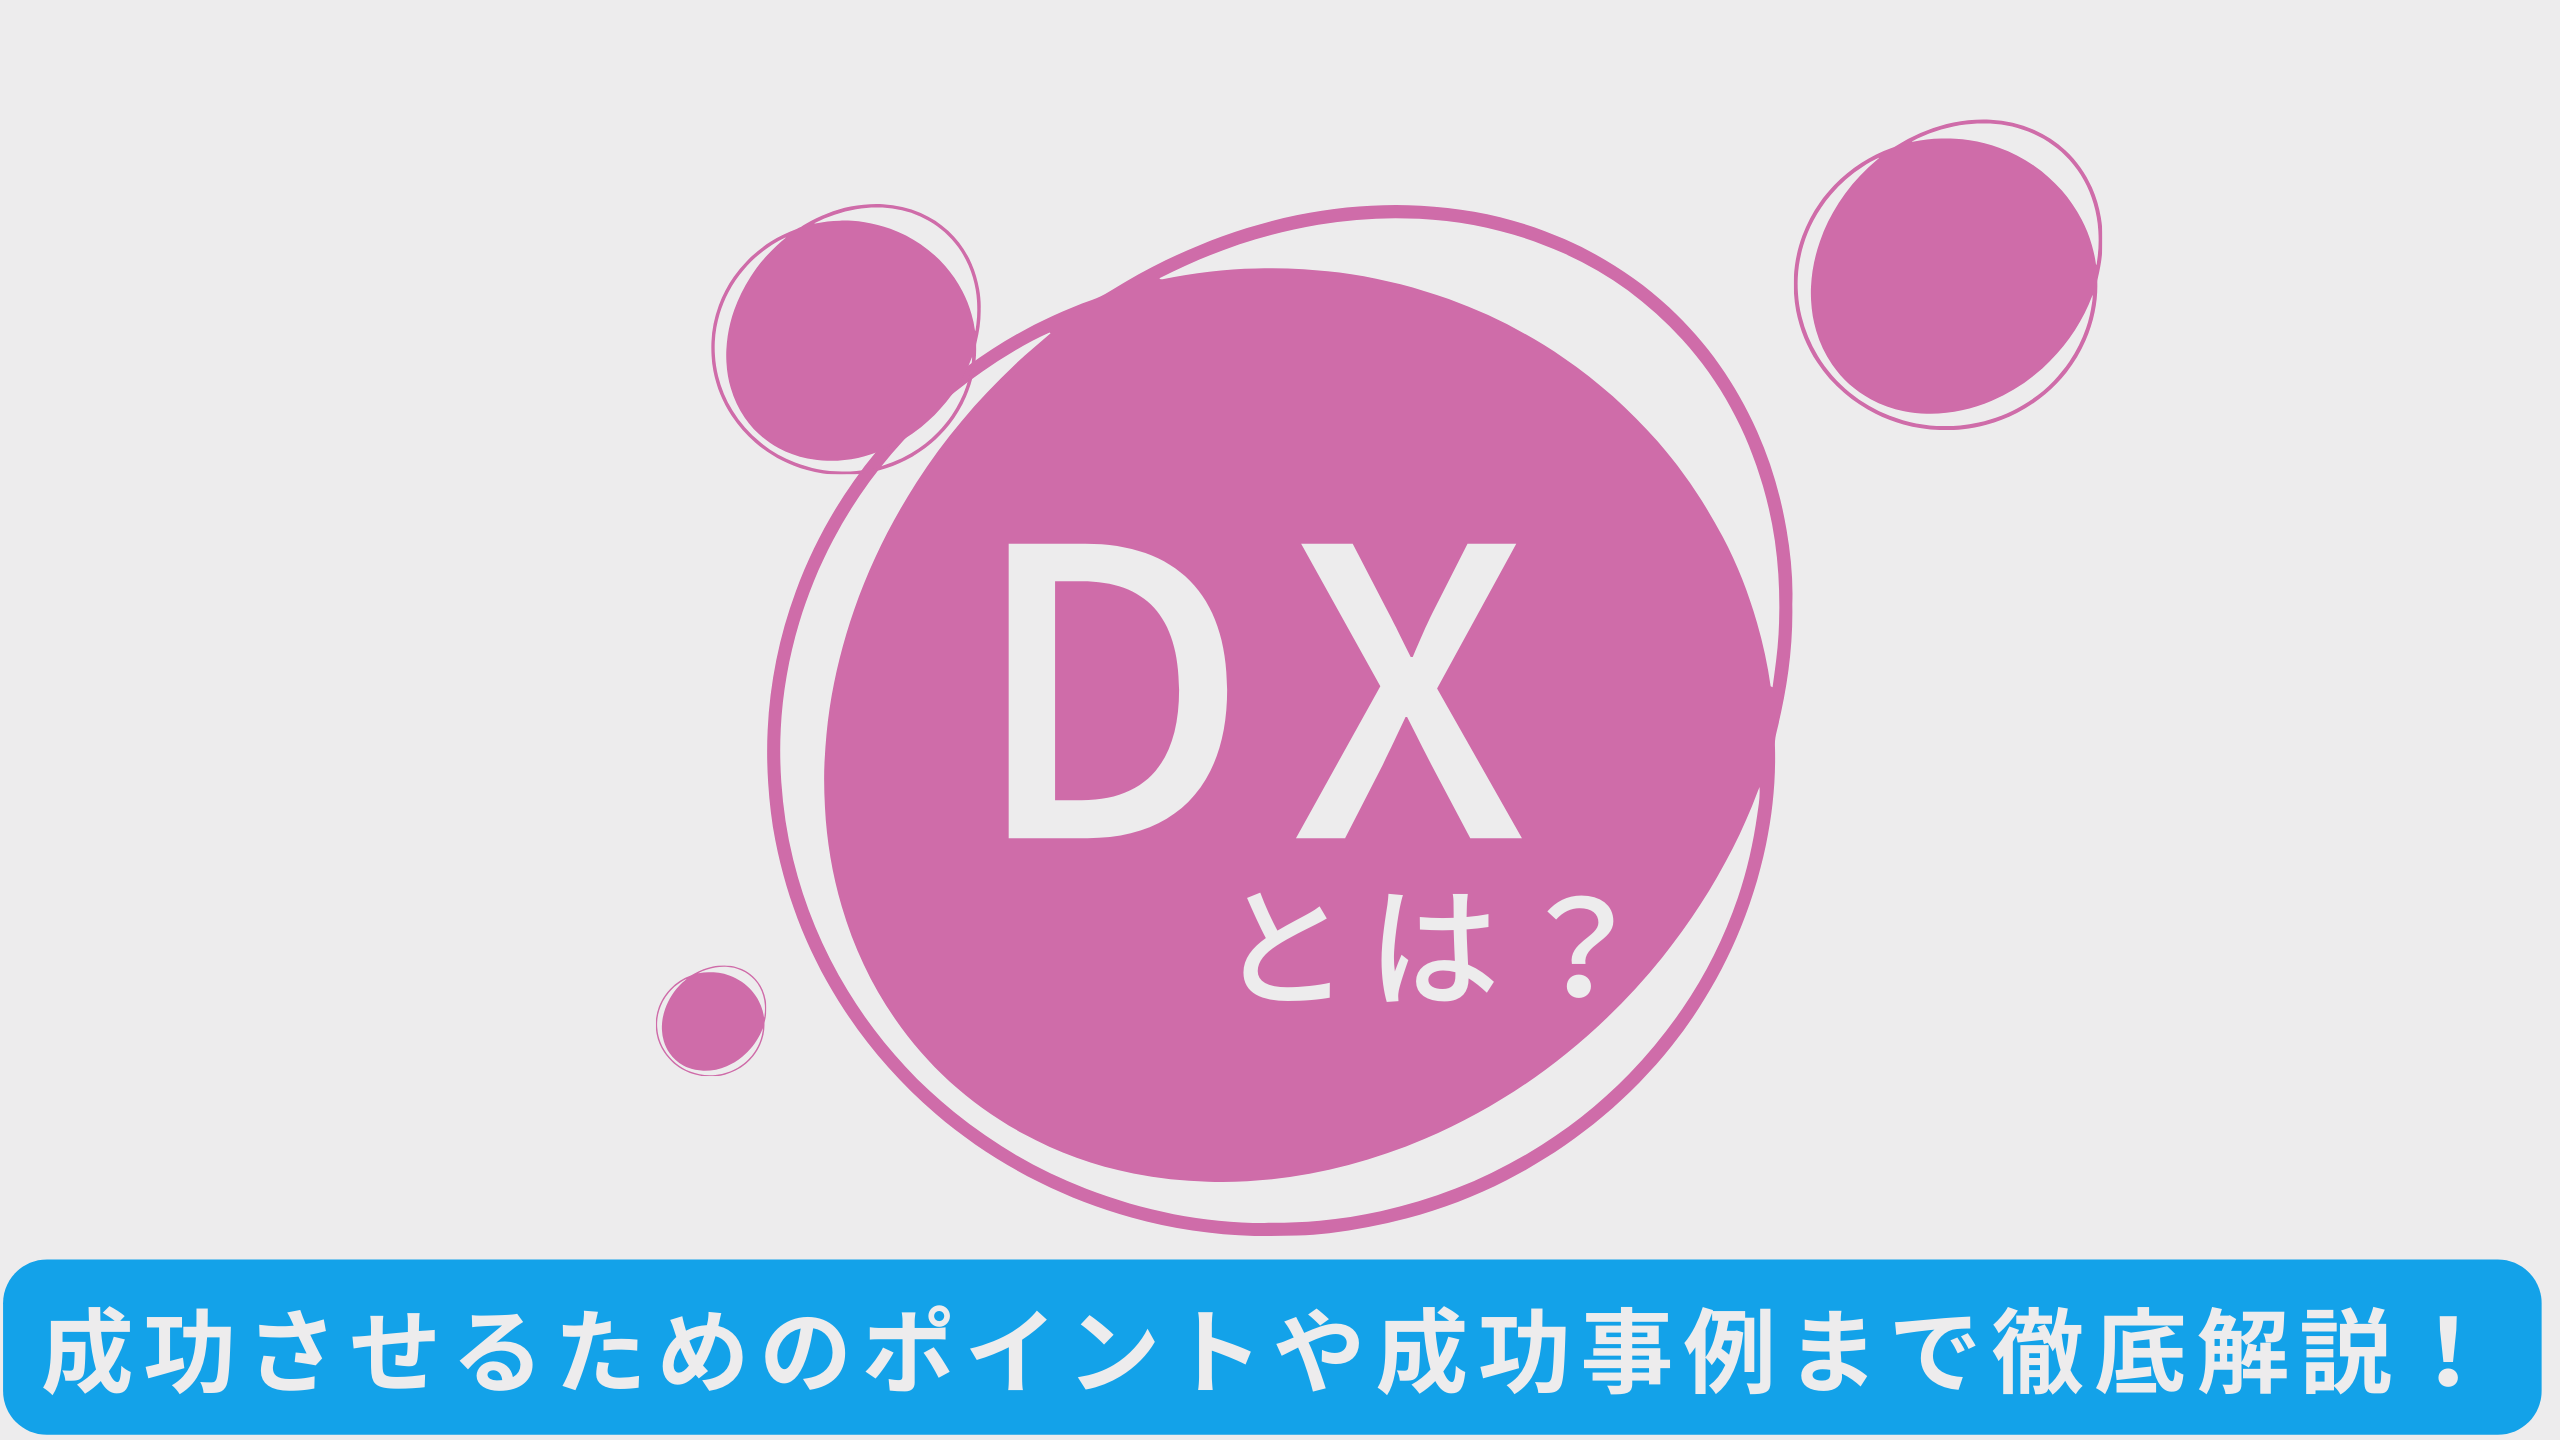 DX （デジタルトランスフォーメーション）はもう常識？！あらためてDXをわかりやすく解説するうえ、成功させるためのポイントや成功事例までをご紹介！